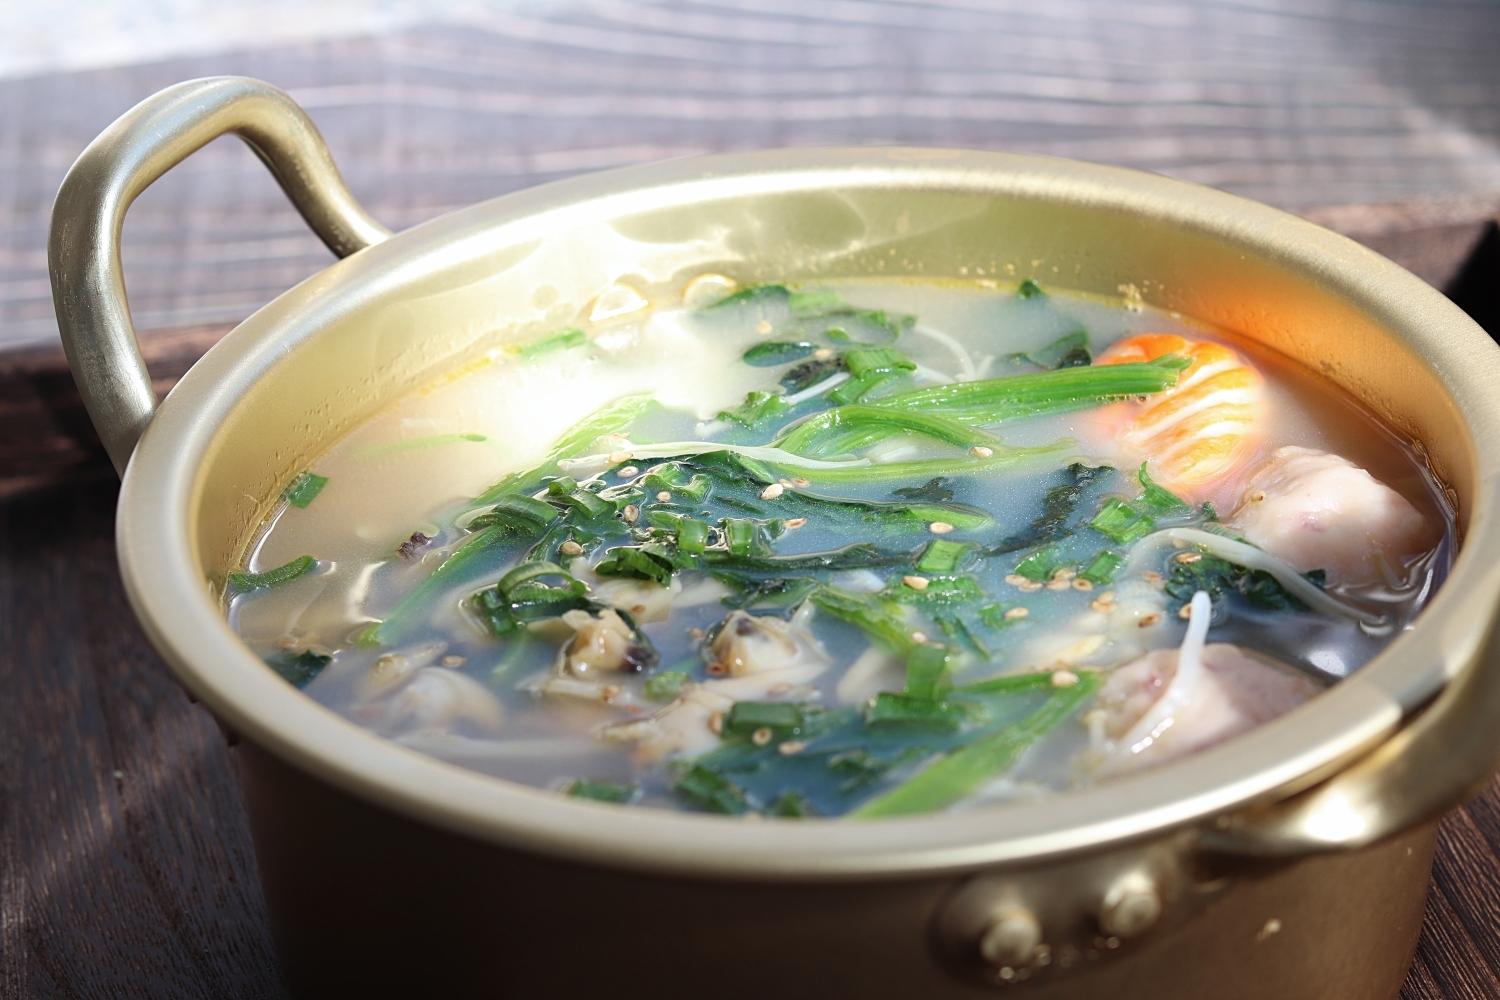 蛤蜊搭配菠菜做汤,鲜美翻倍,营养好喝,天冷要多吃